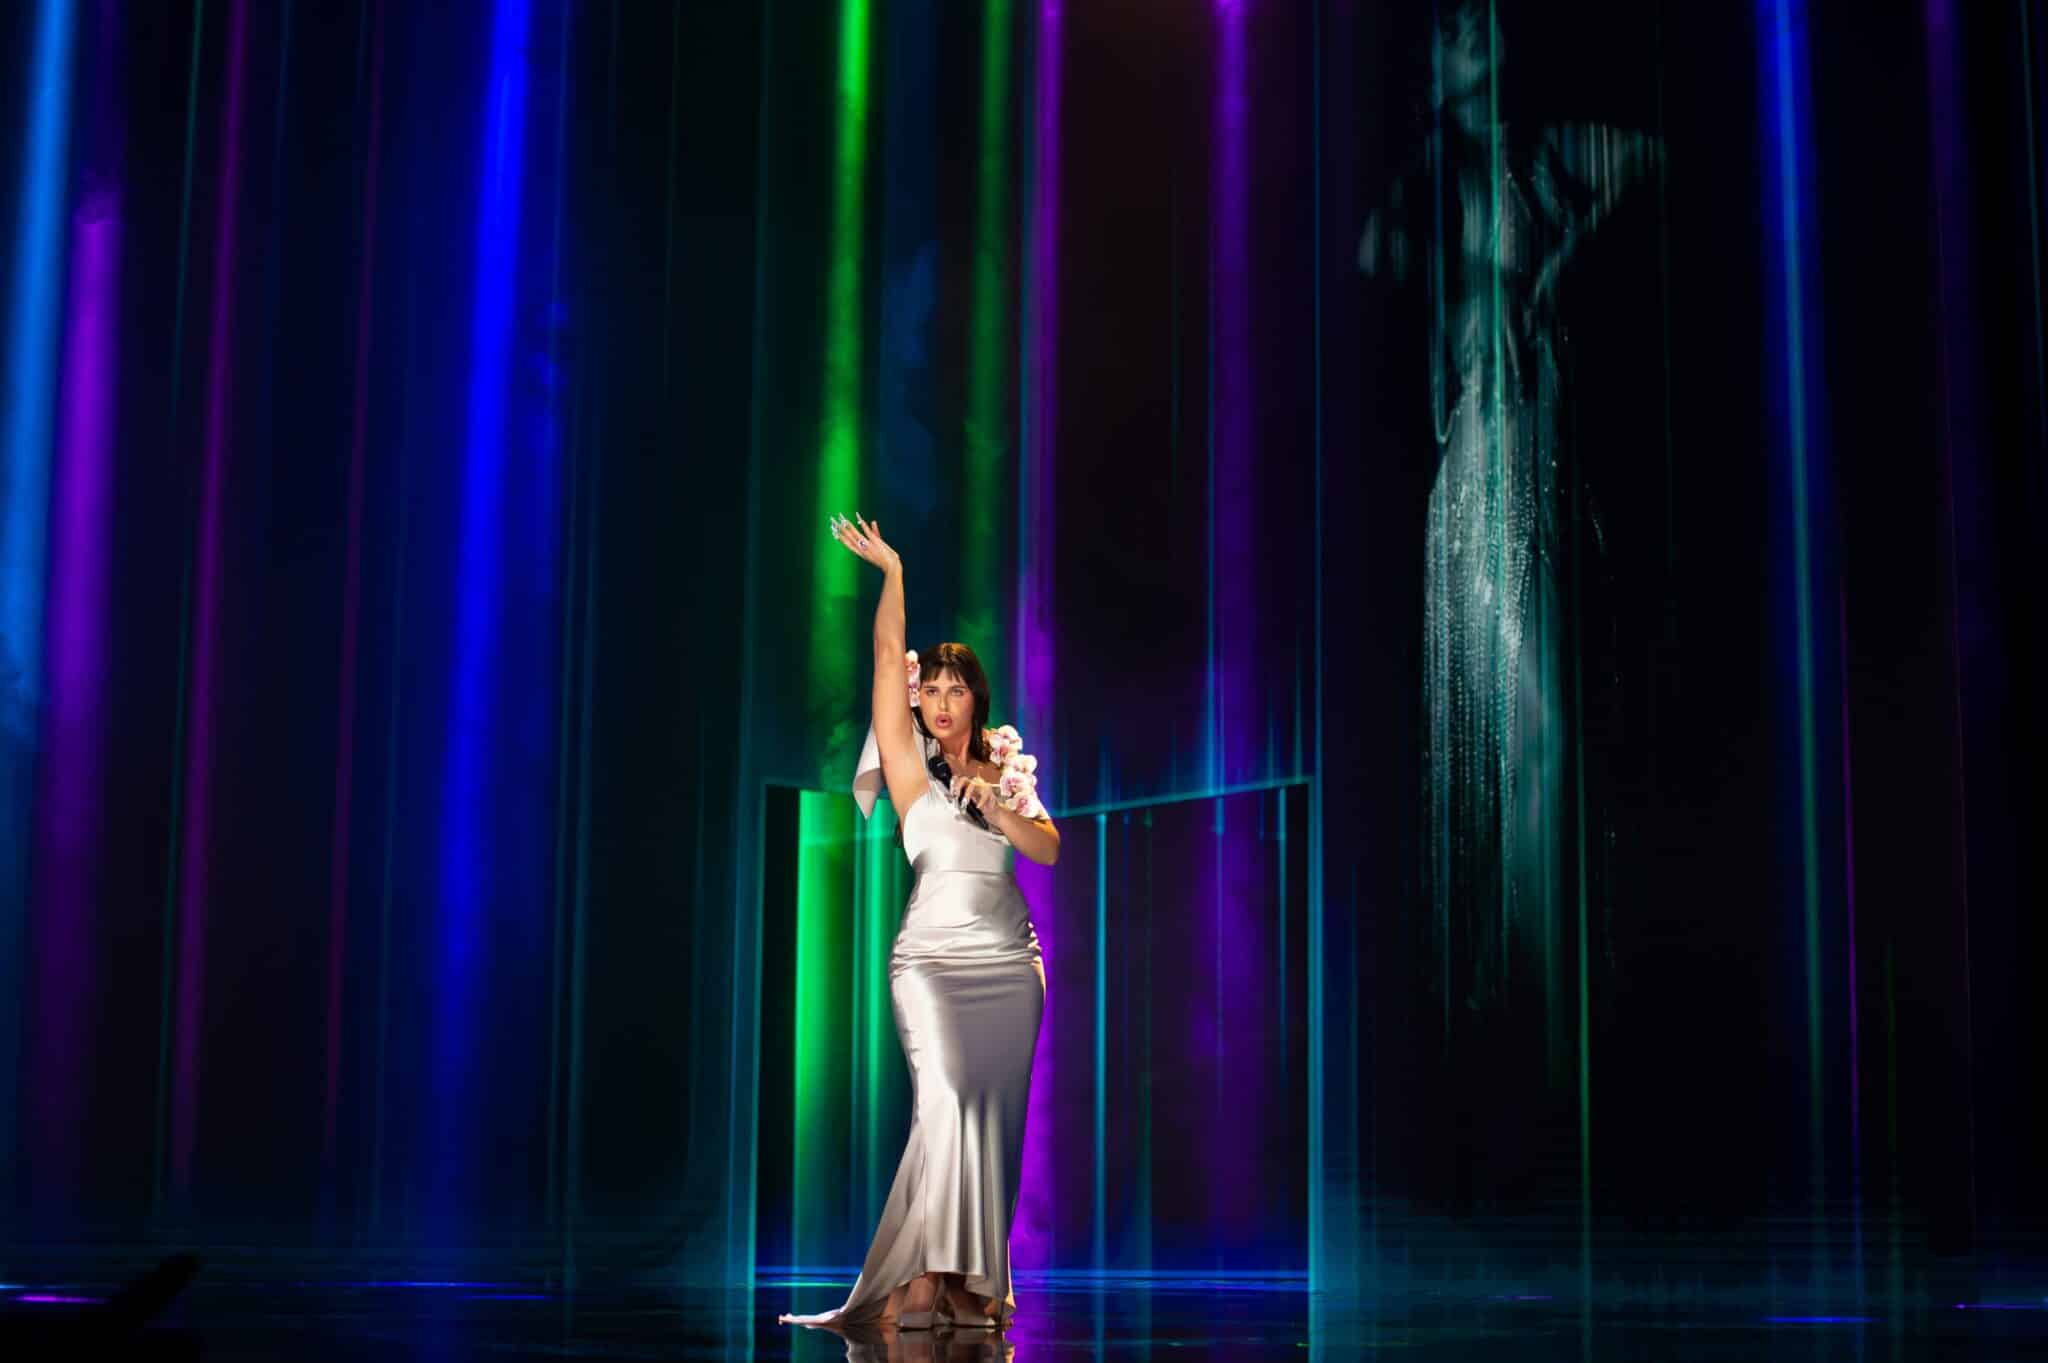 Actuación musical de la cantante Nathy Peluso interpretando 'La Violetera' durante los Premios Goya 2021.